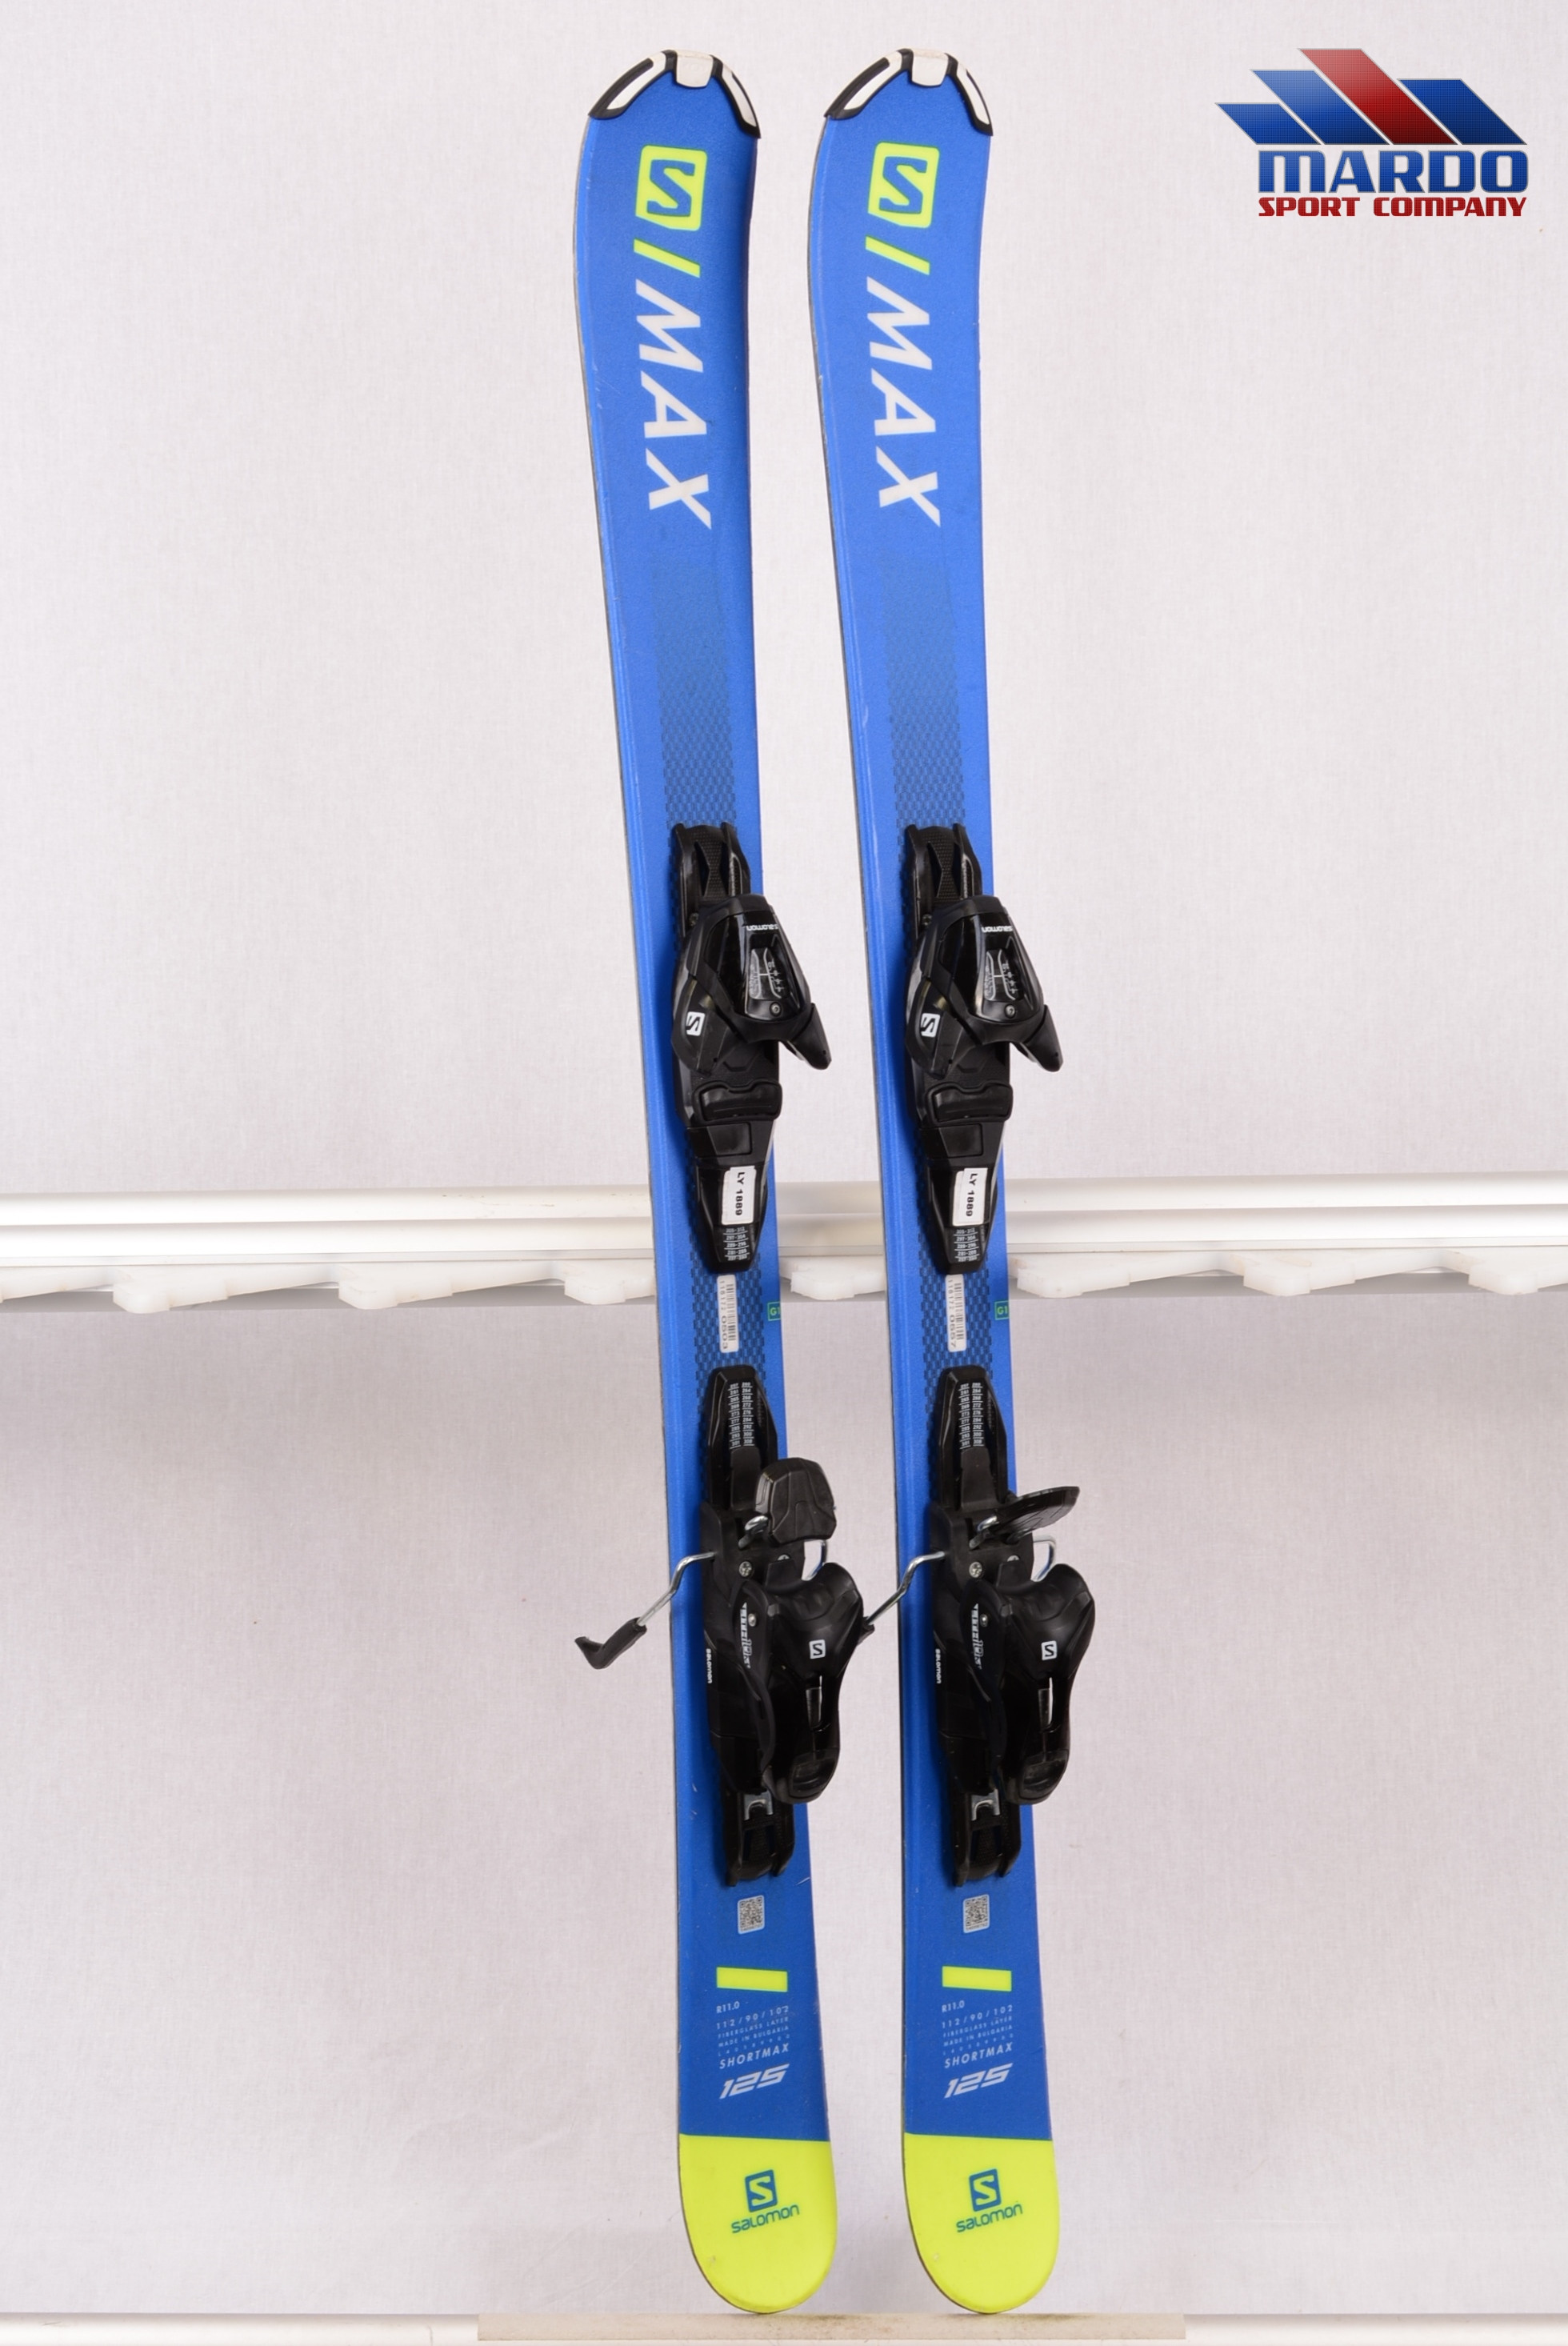 Zeg opzij Afkorting Niet modieus snowblade skis SALOMON SHORTMAX 2019, SNOWBLADE, BIG FOOT, FUN CARVE,  fiberglass layer + Salomon L 10 ( like NEW ) - Mardosport.com